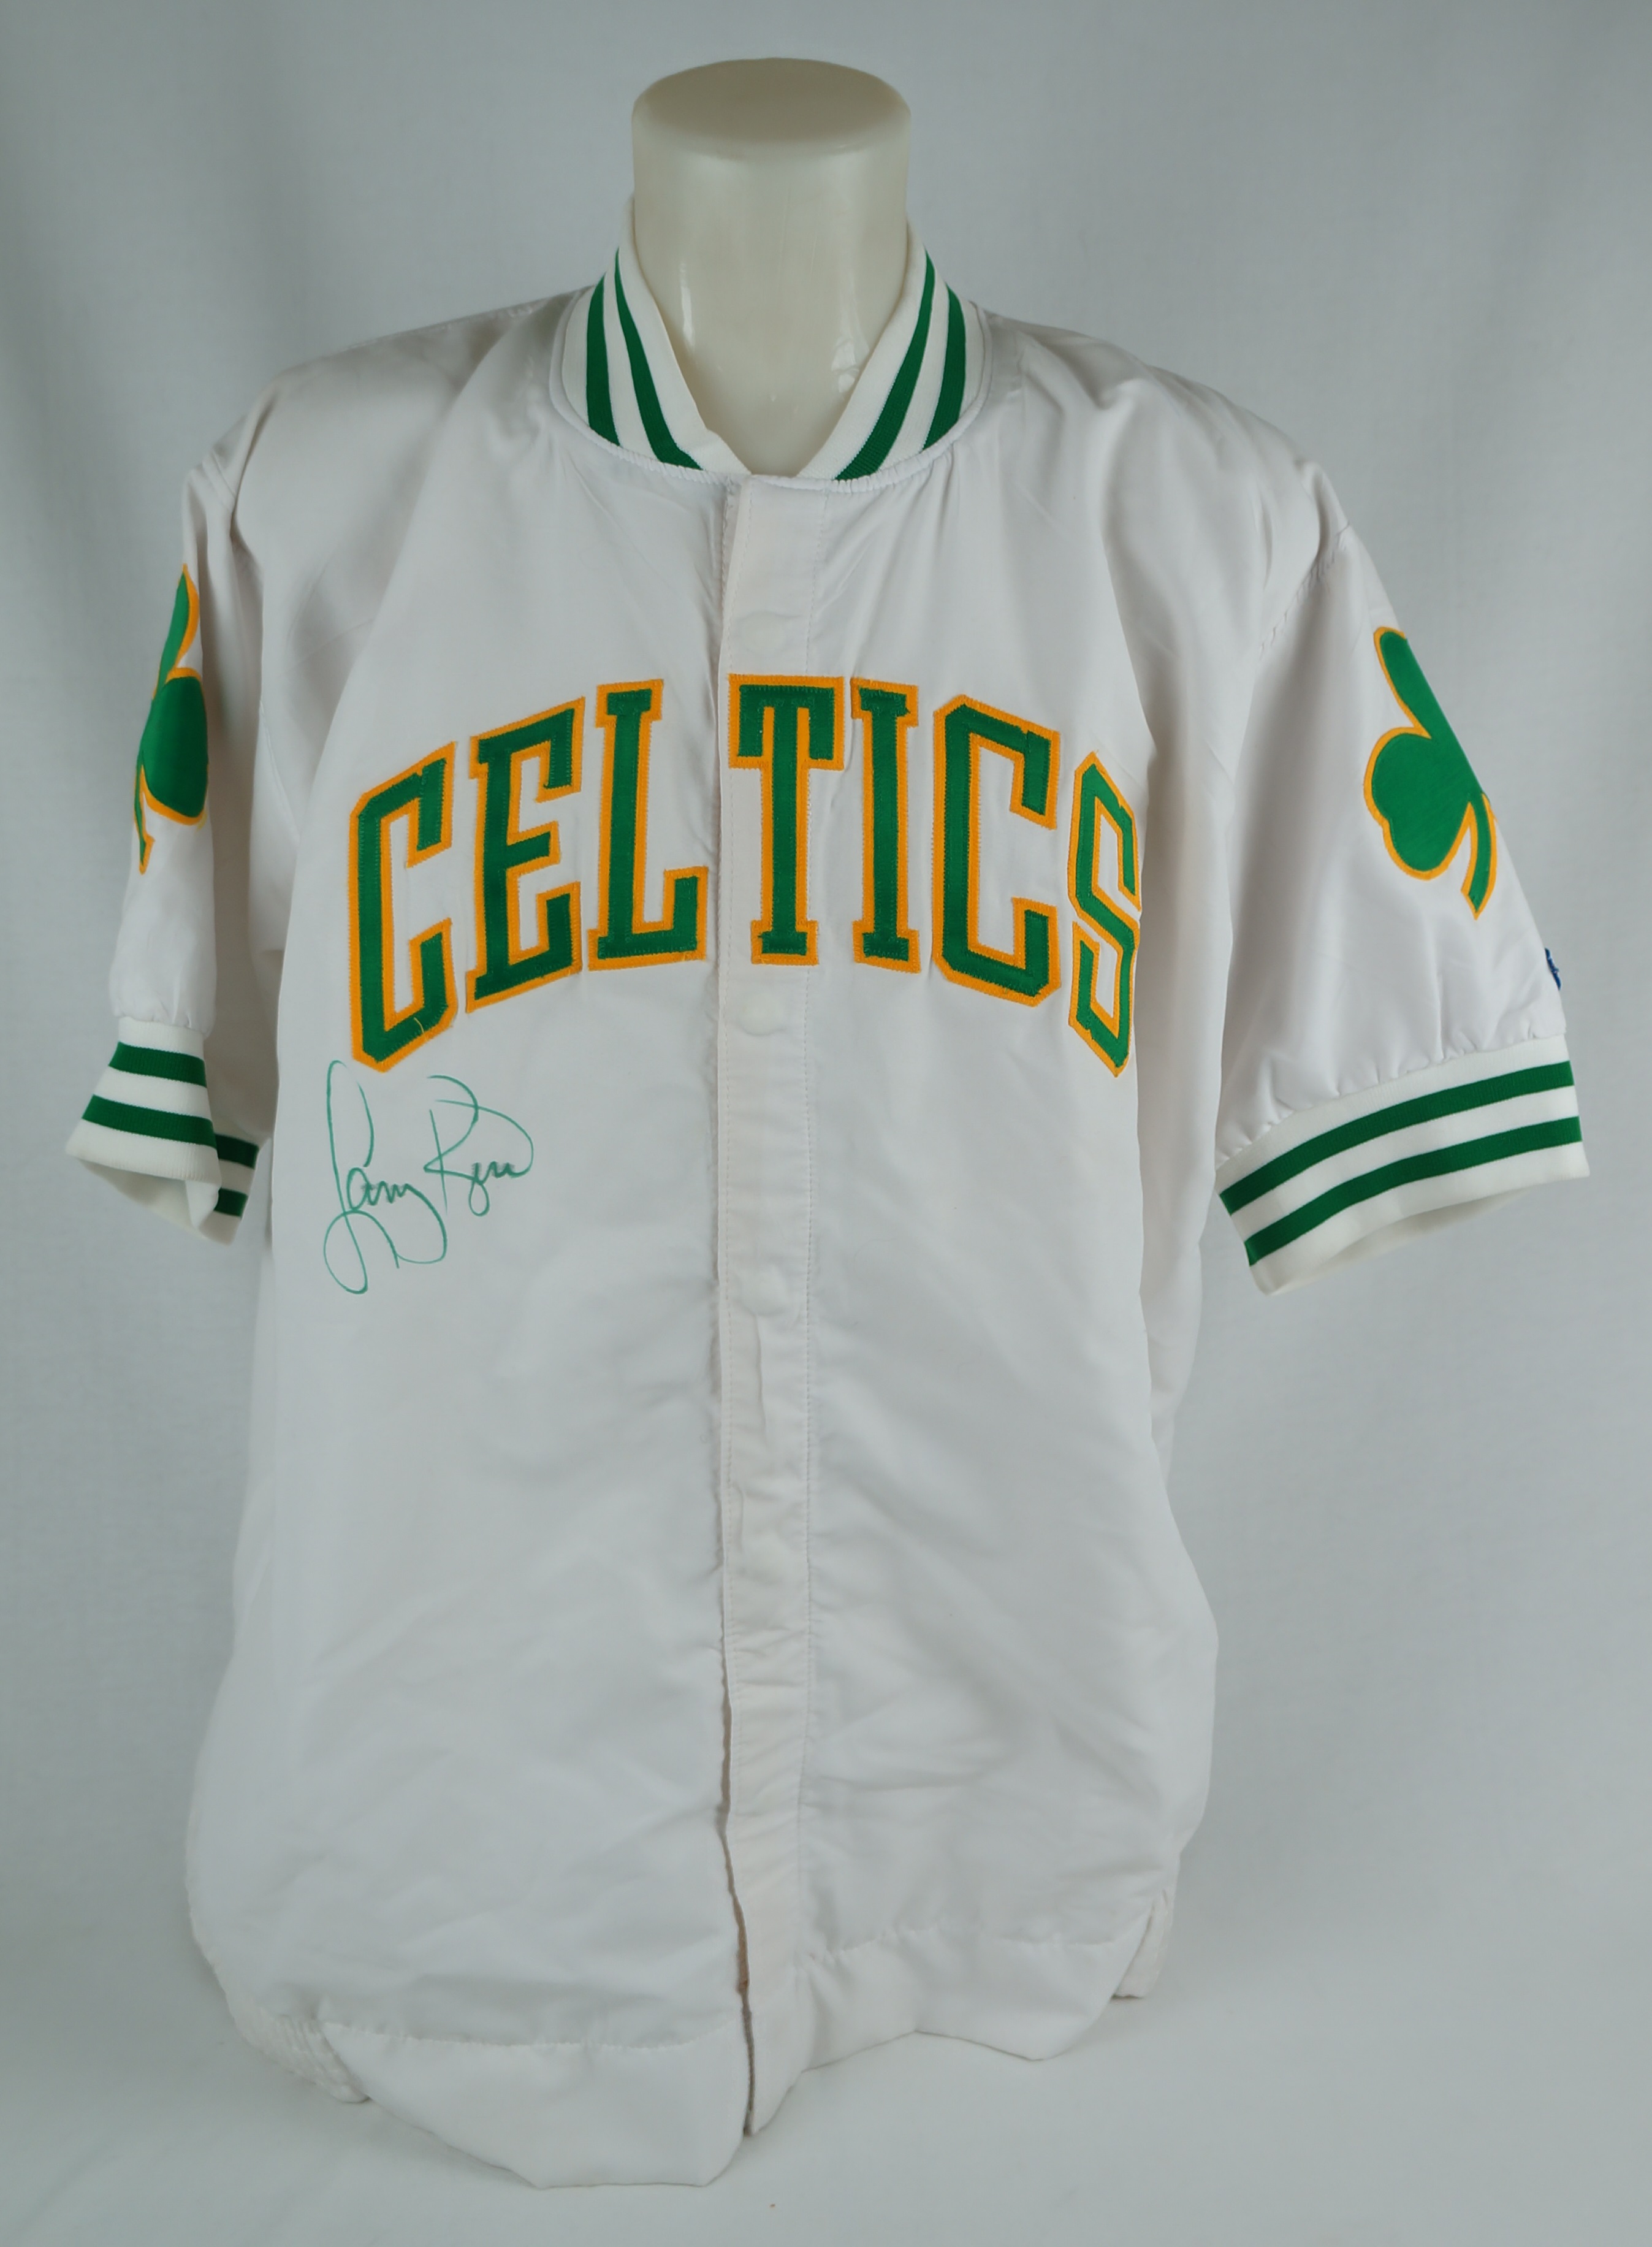 Celtics Warm Up Jacket for sale